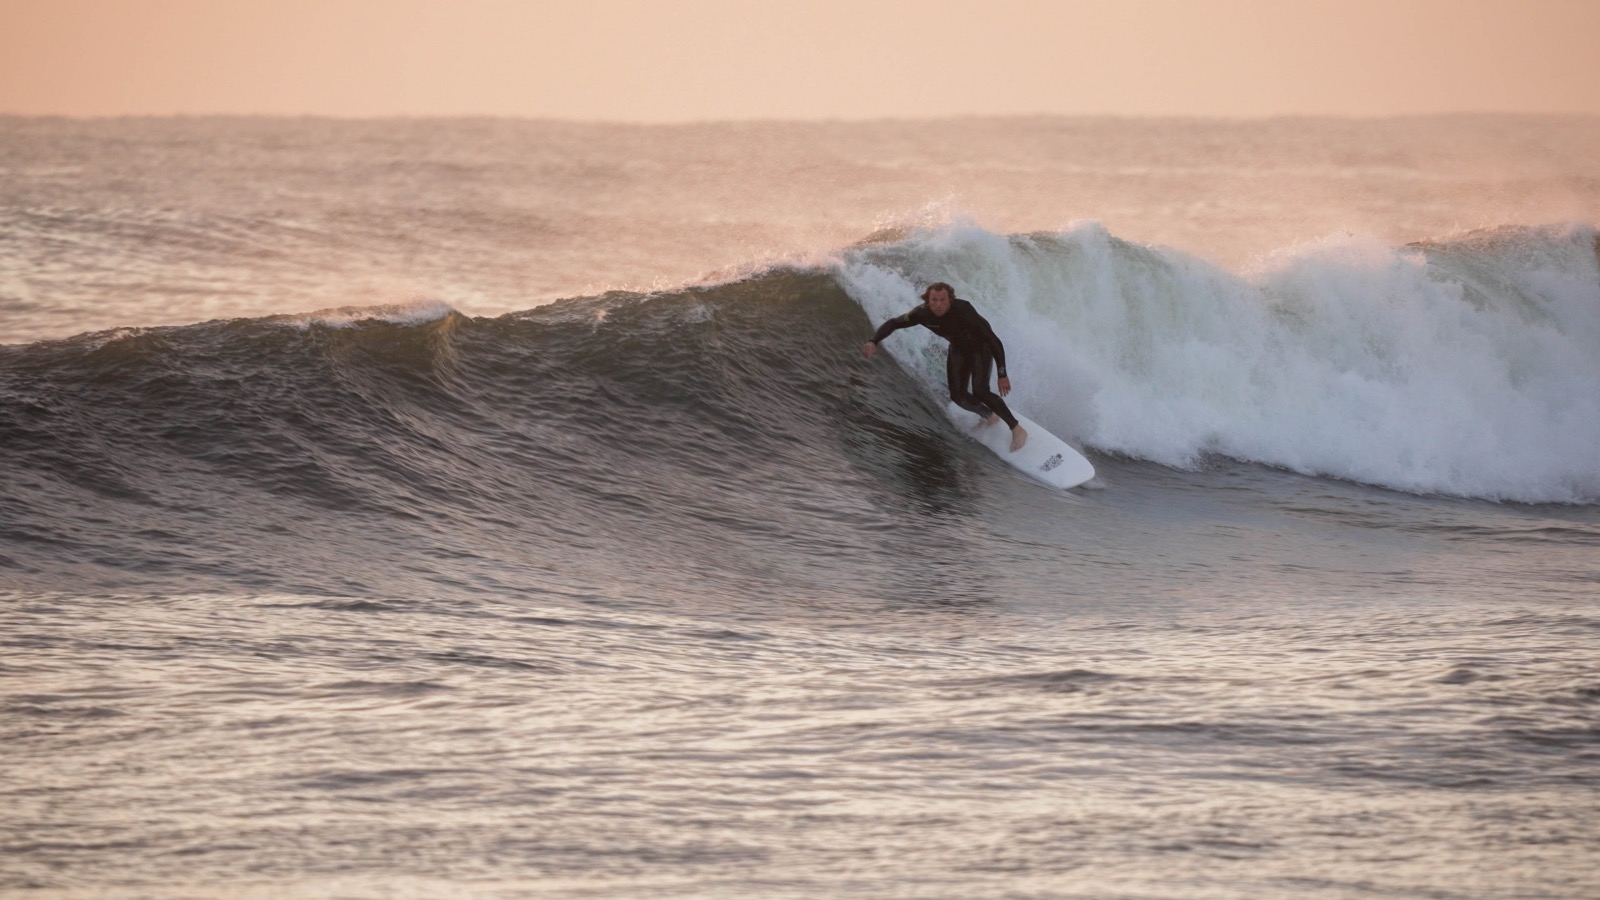 Ben Gravy 7 Seas in 7 Days surfing trip